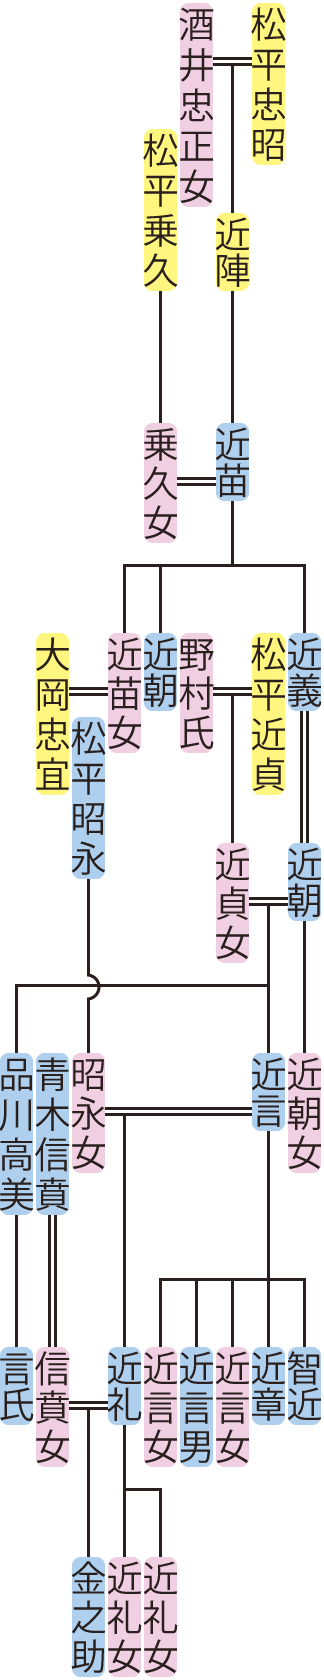 松平近苗～近礼の系図